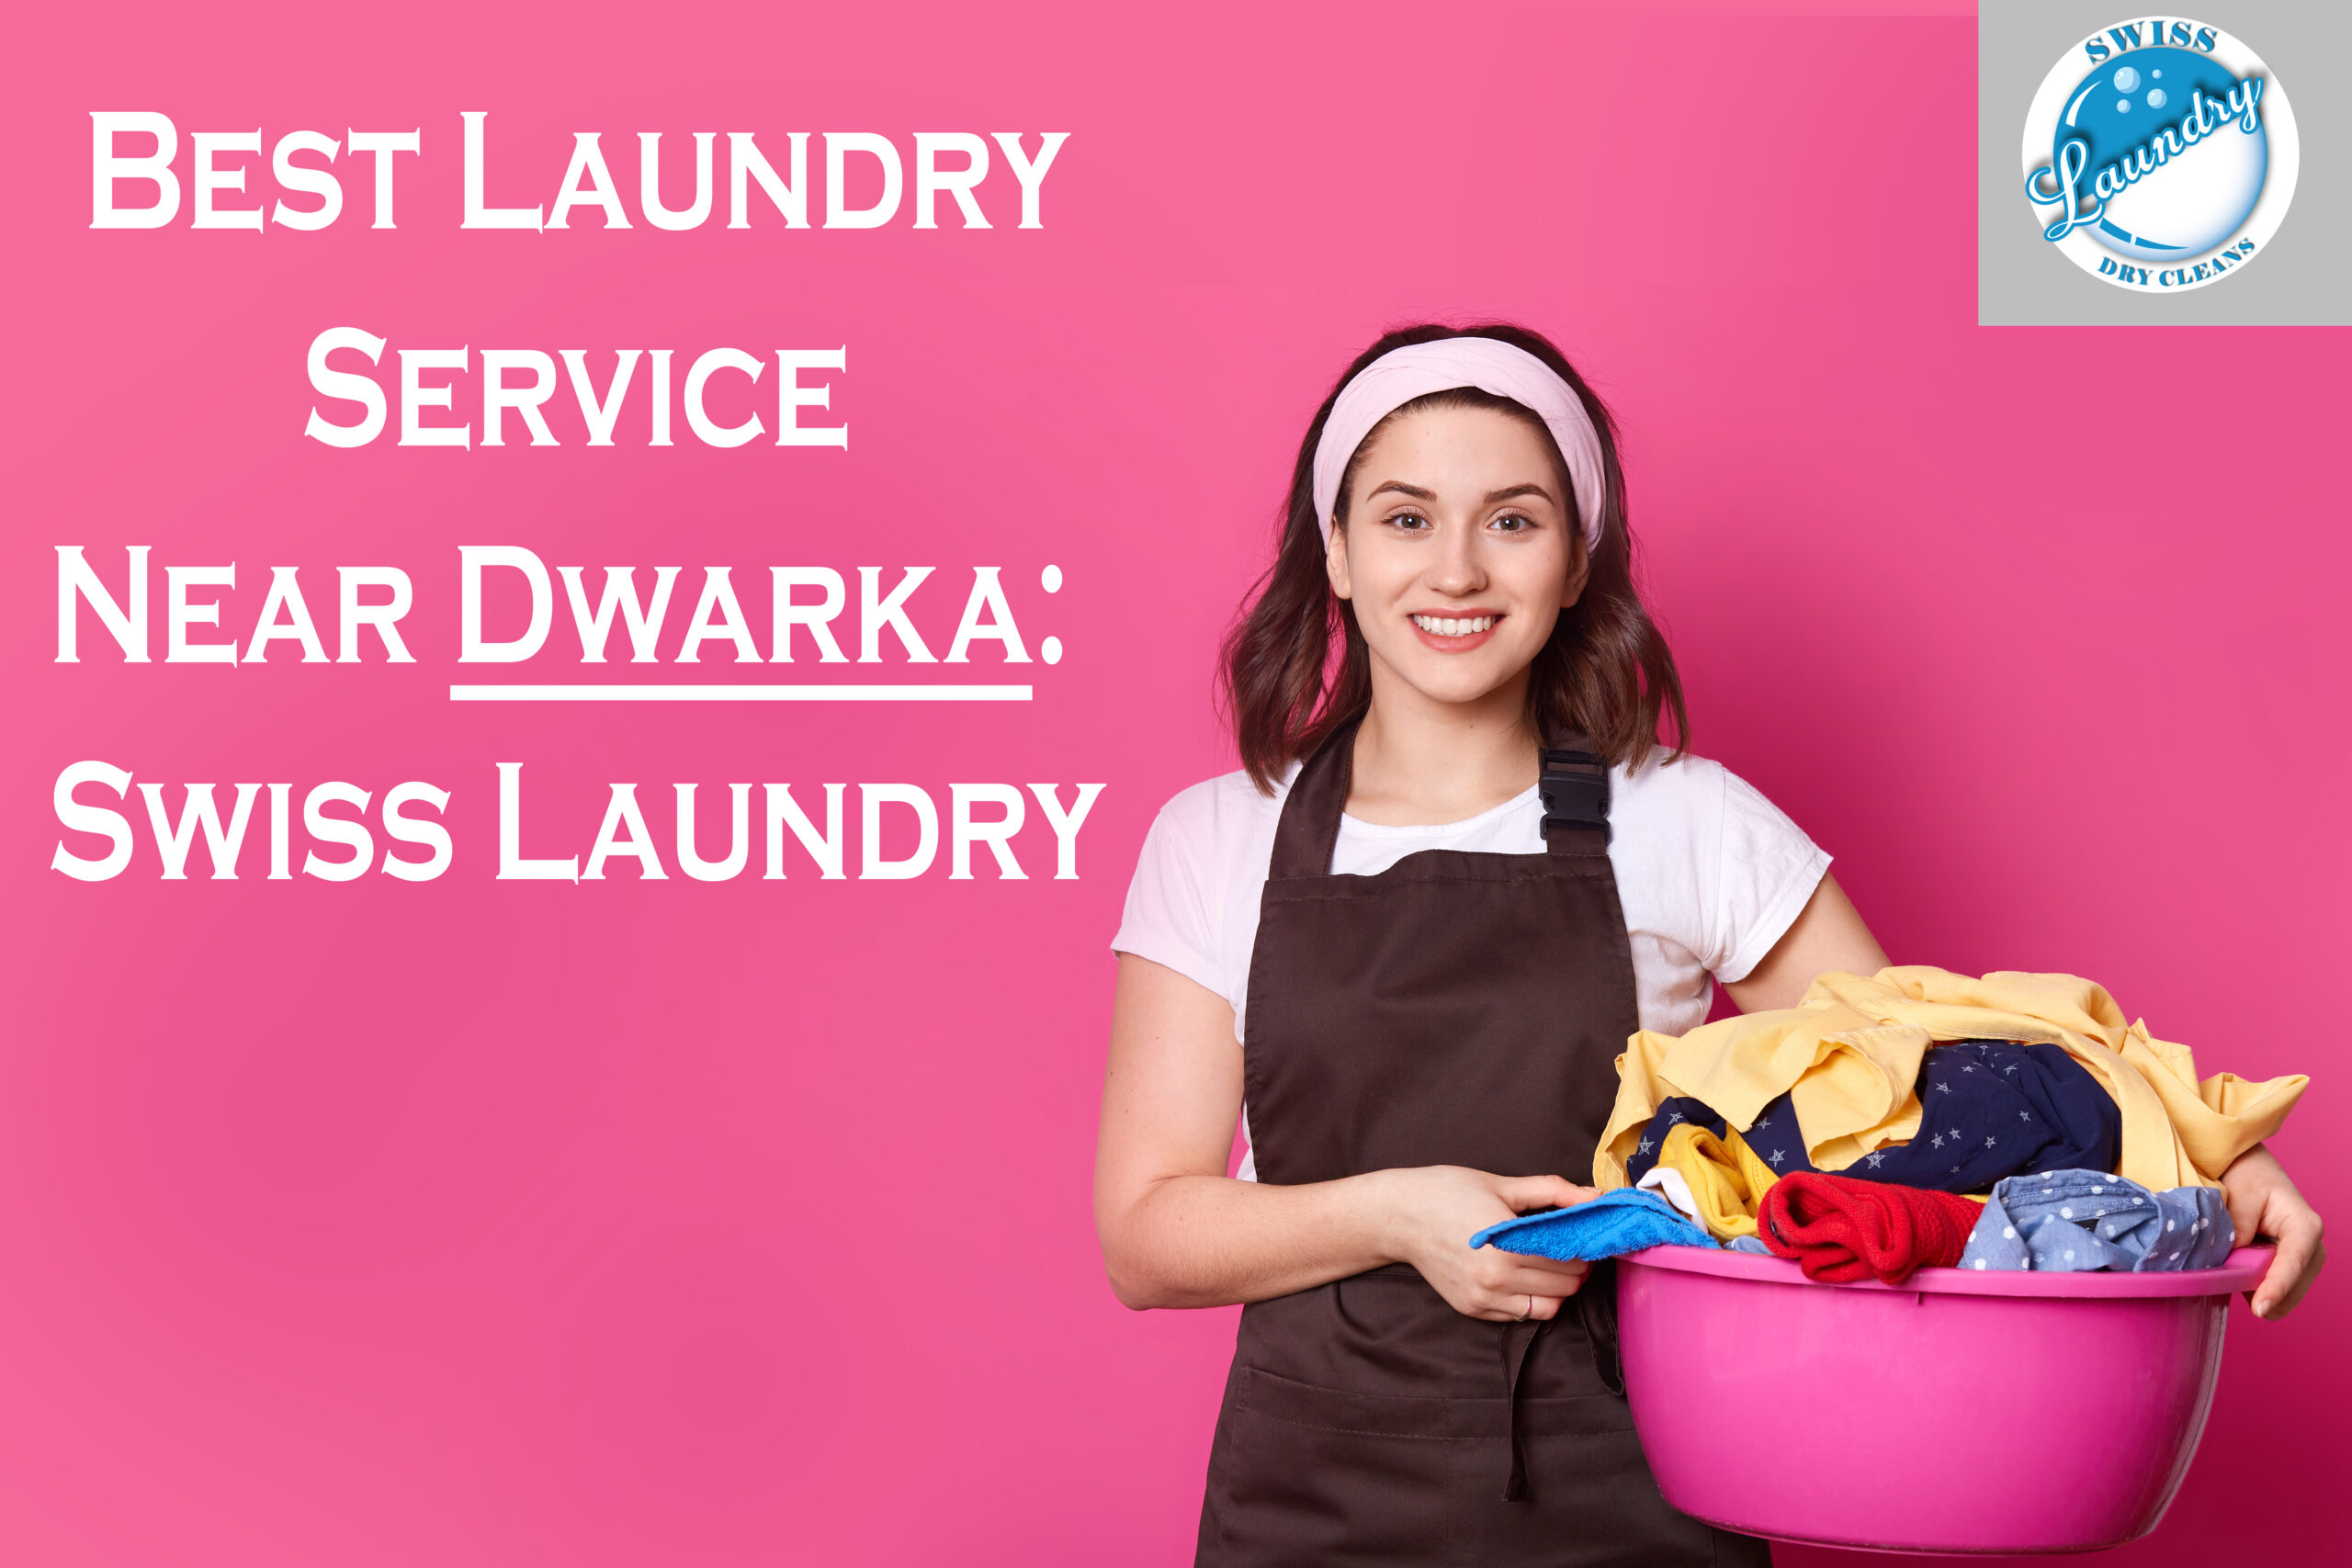 Best Laundry Service Near Dwarka